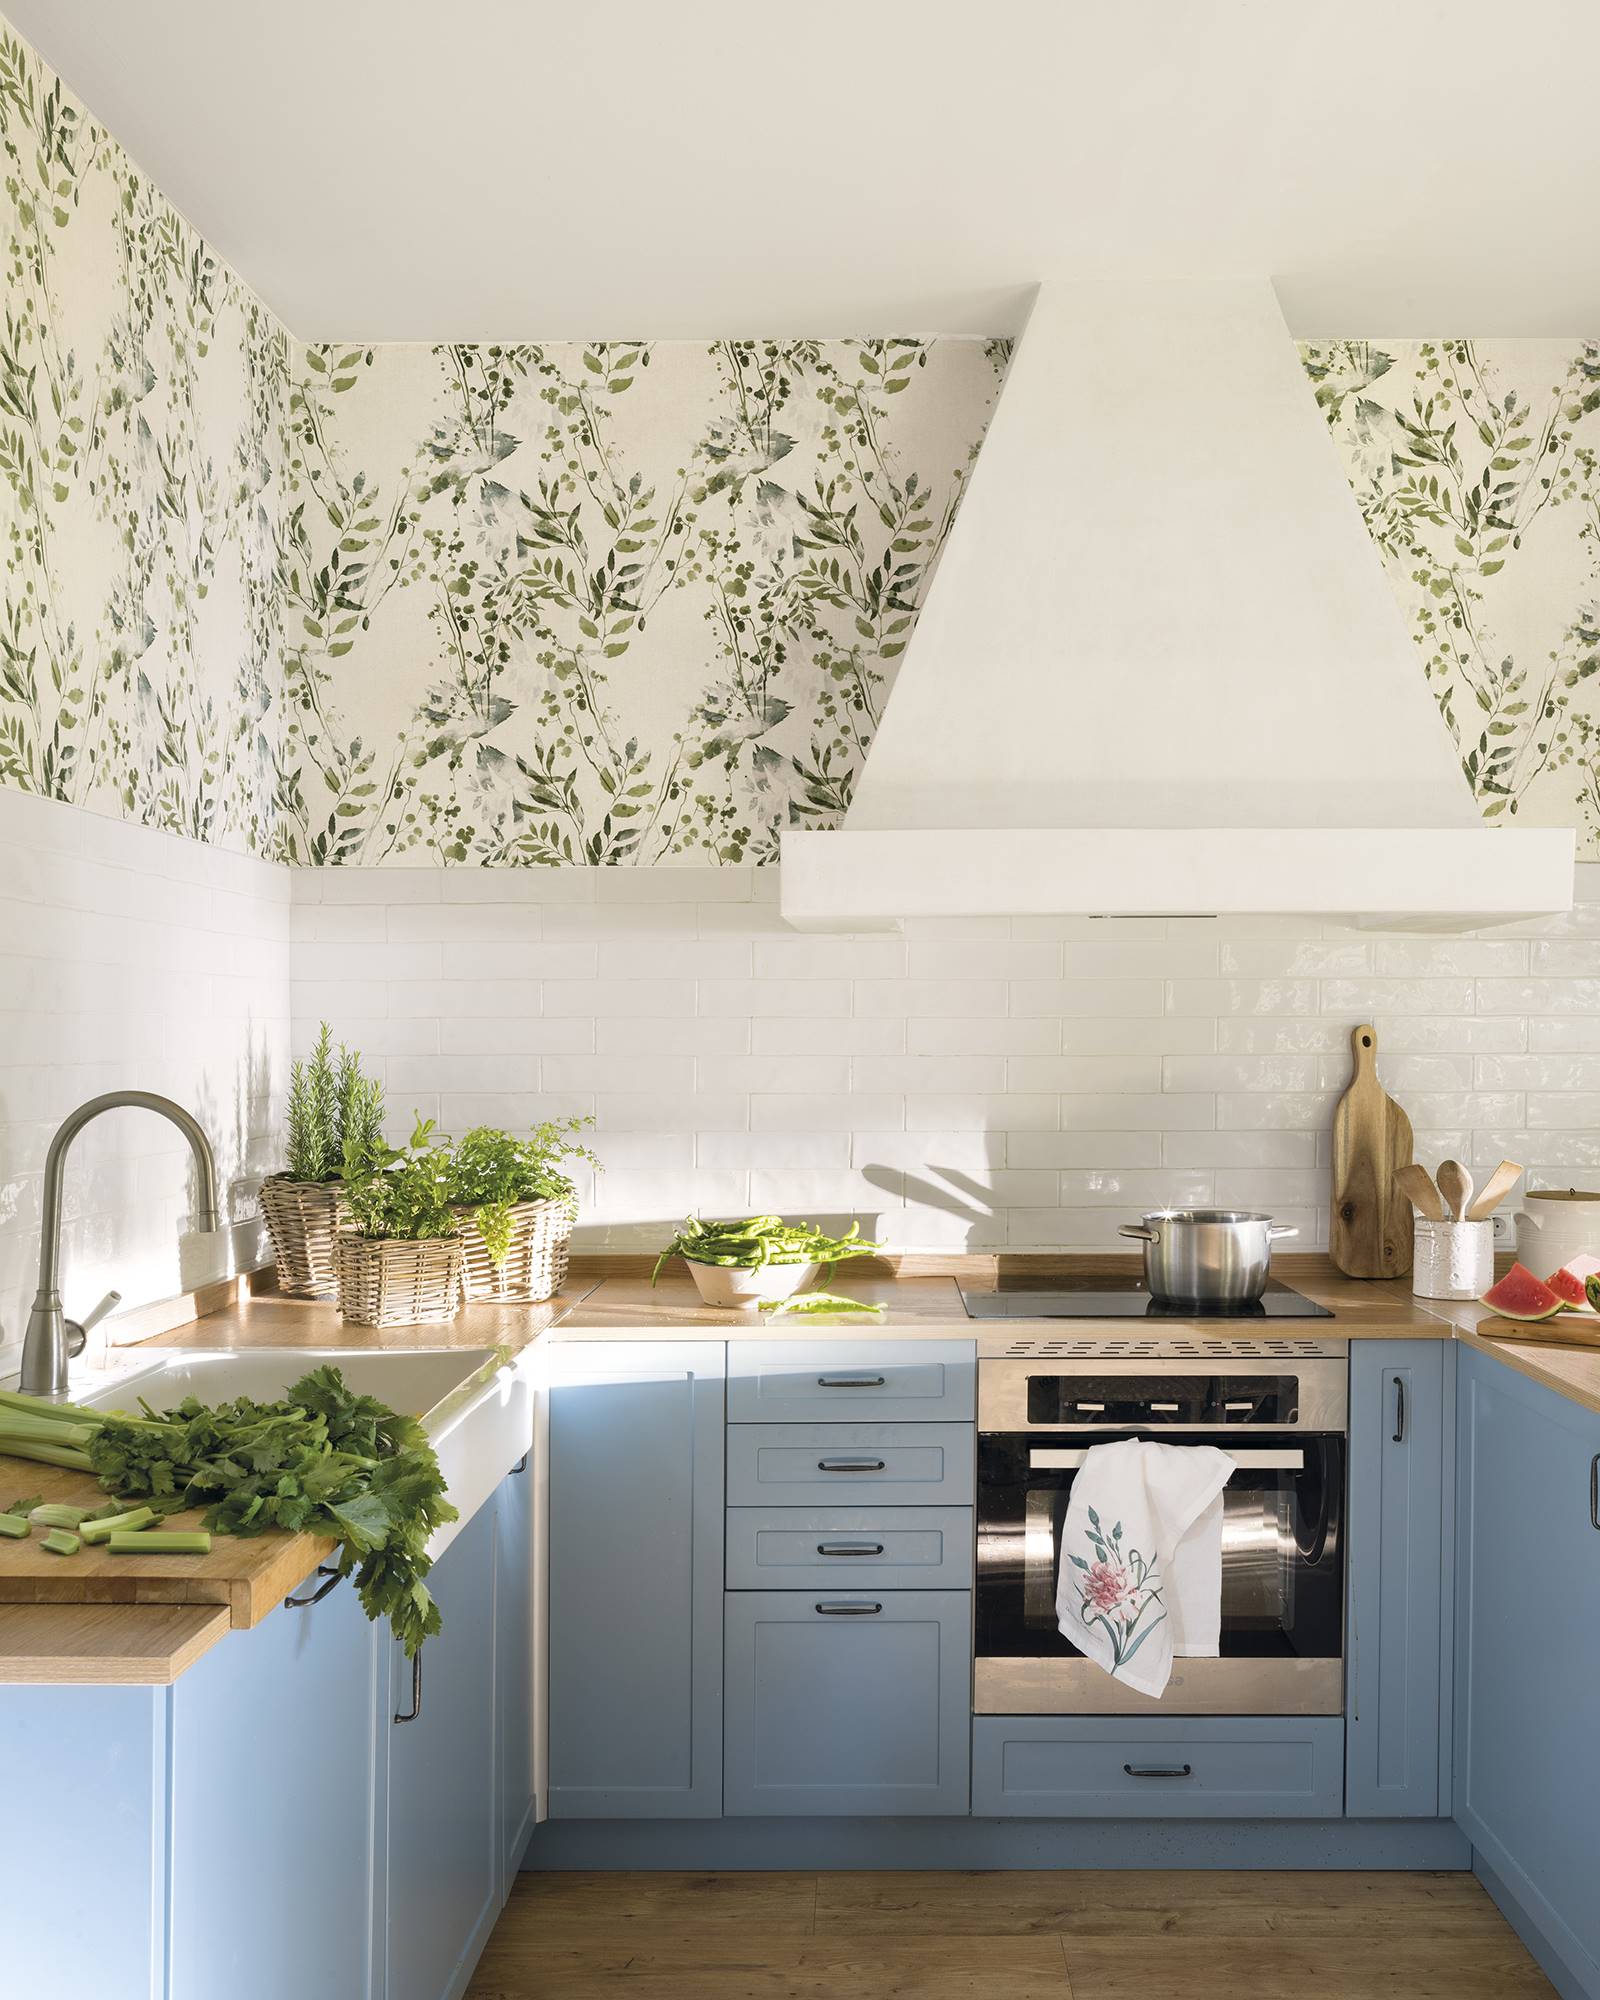 Una cocina en tonos blancos y azules con papel pintado con motivos florales en la parte superior